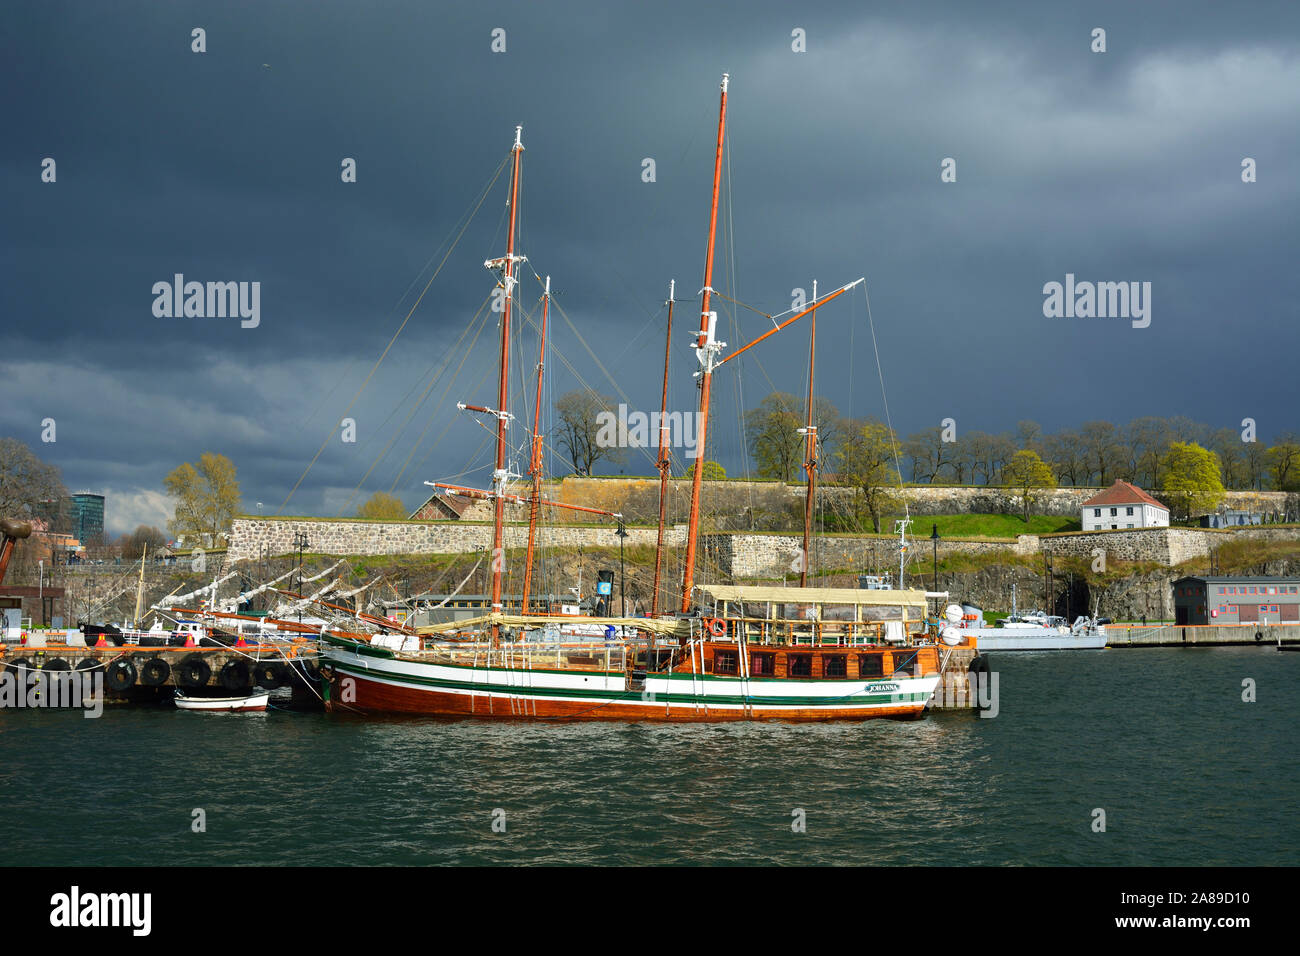 Ein Segelschiff im Hafen in der Nähe der Festung Akershus. Oslo, Norwegen Stockfoto